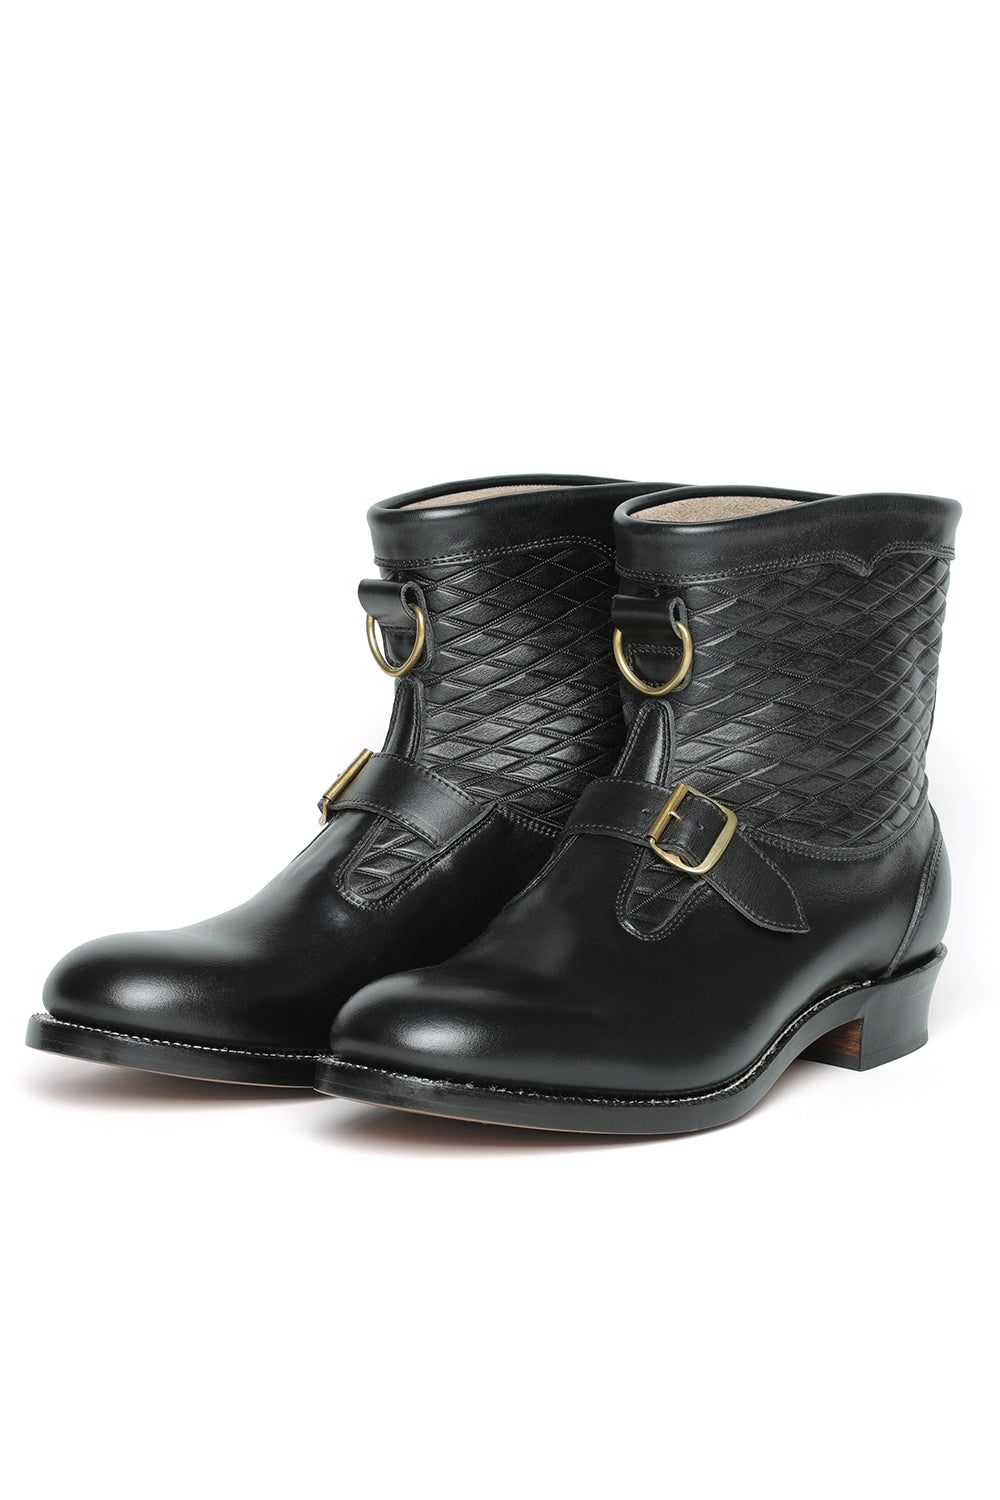 Lot.300 Roper Boots -Black-